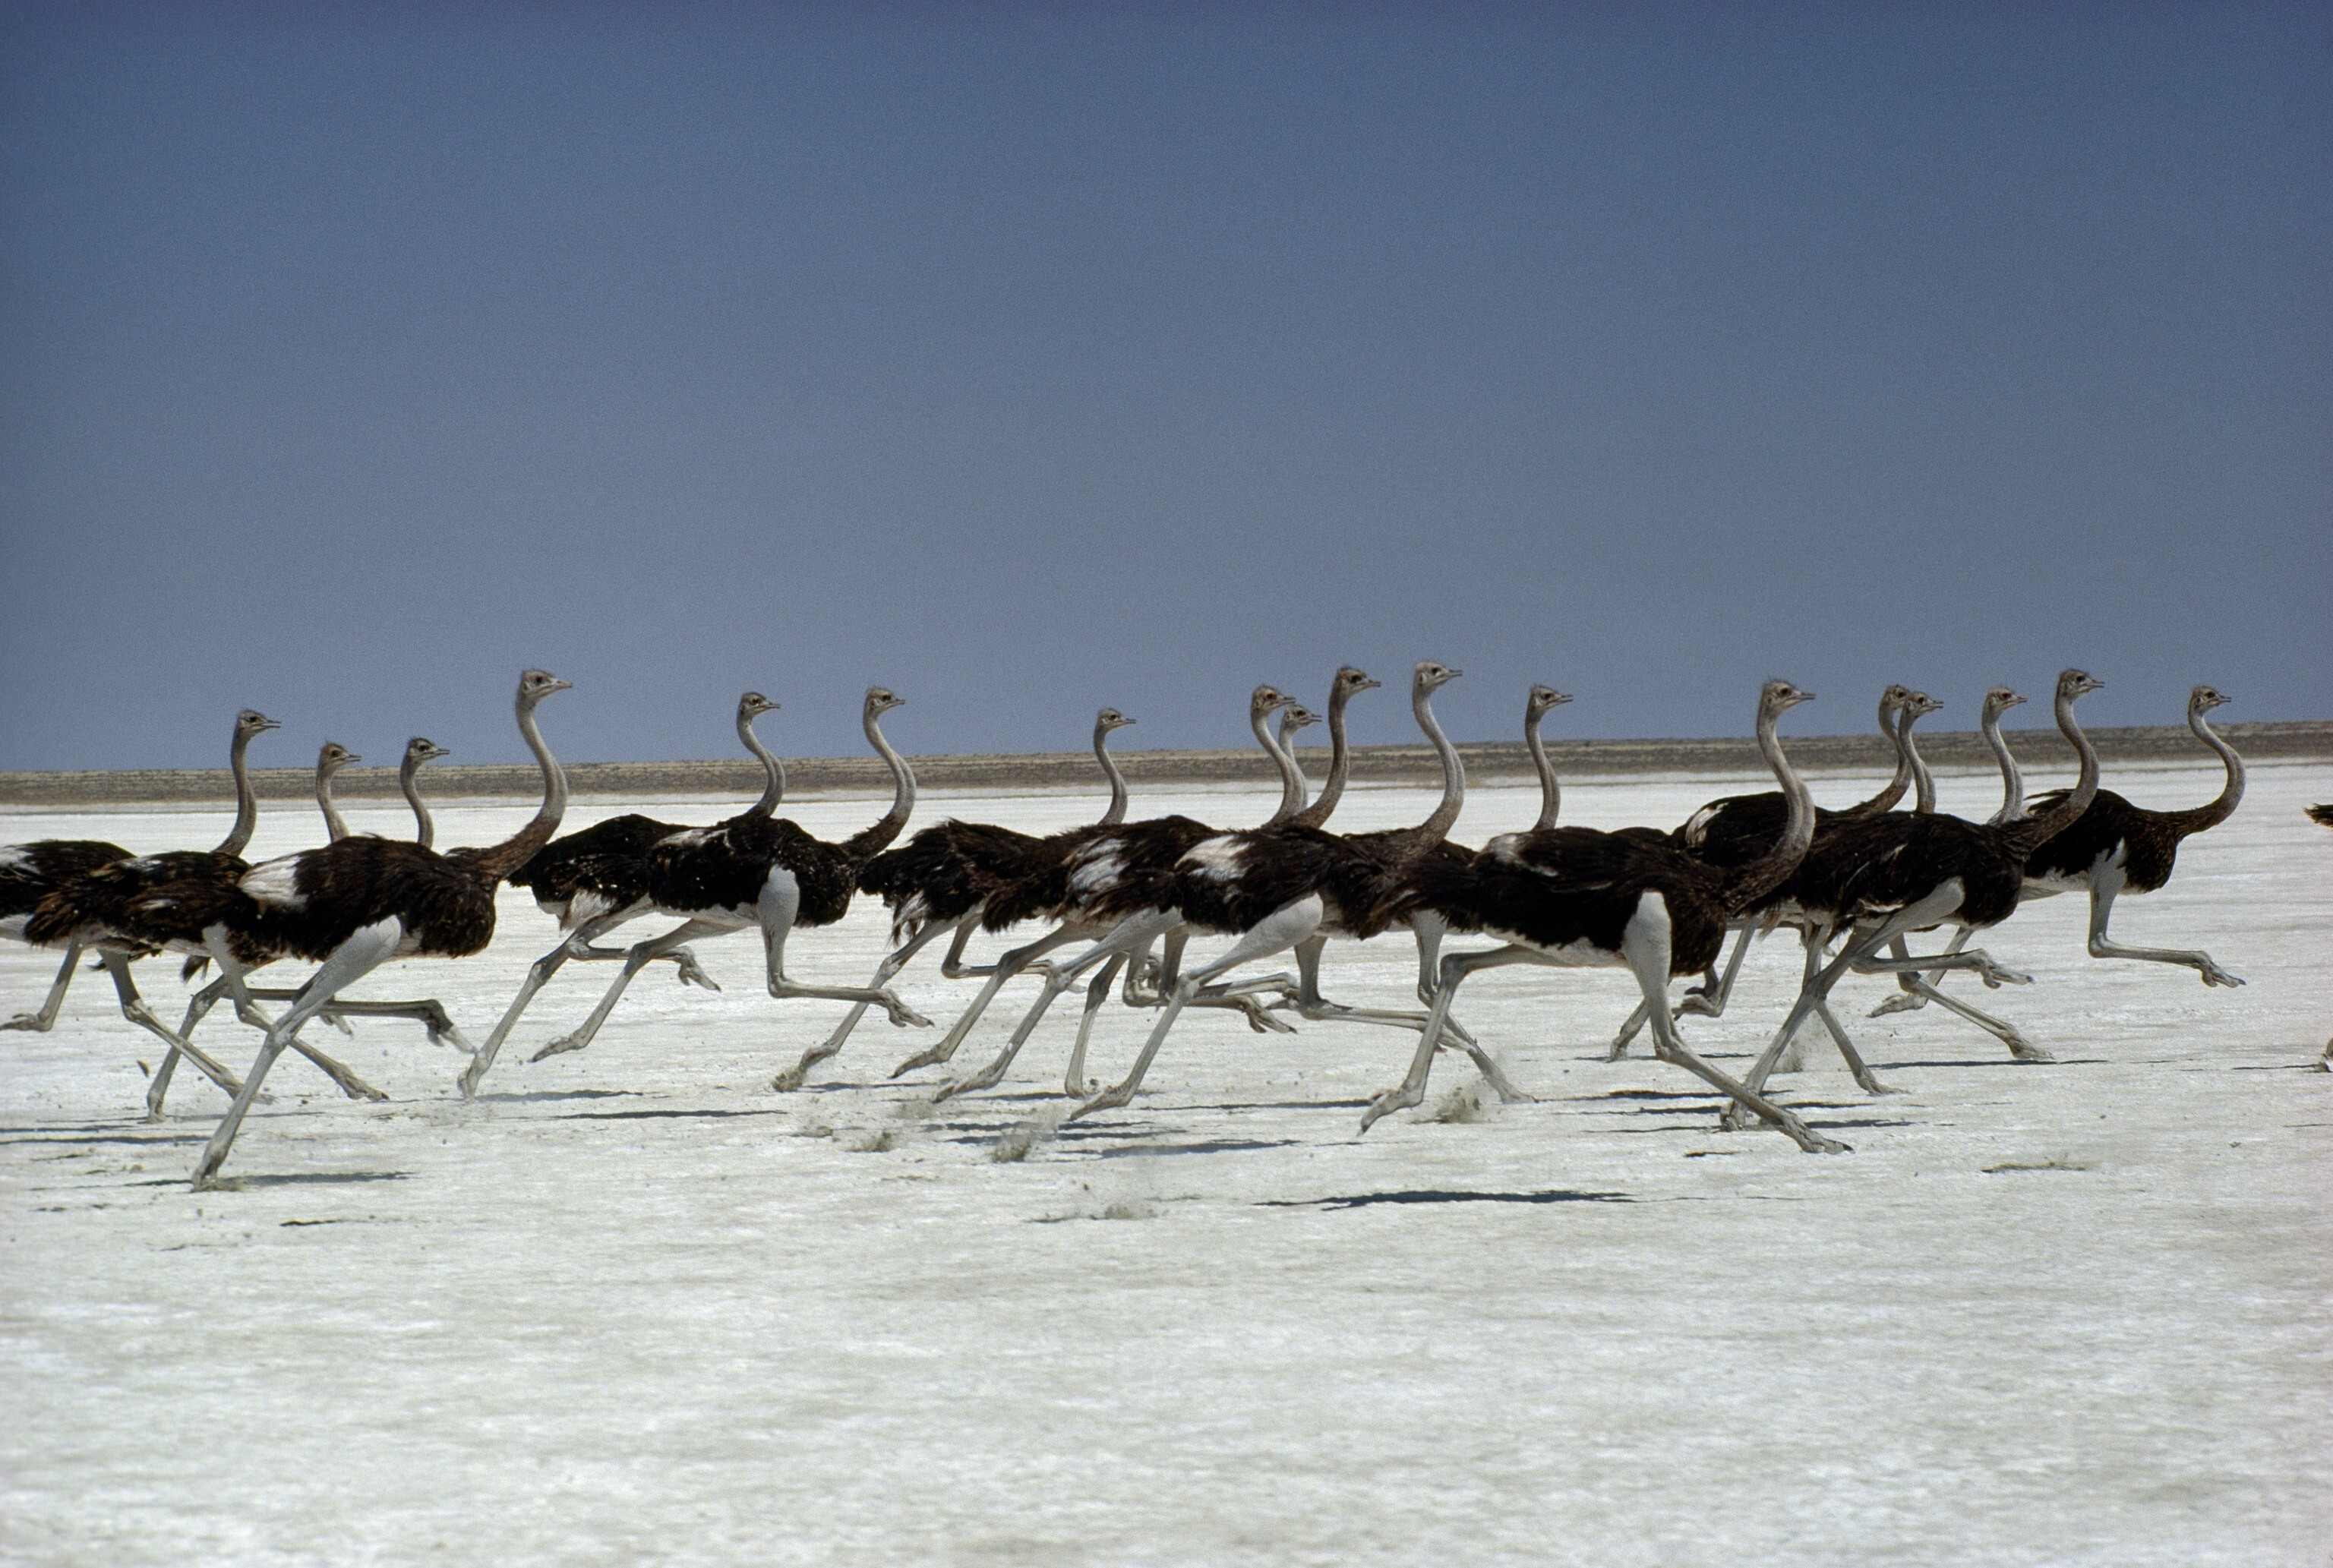 Стая страусов пересекает солончак Этоша в Намибии. Быстроногие наземные птицы могут развивать скорость более 65 километров в час. Фотографы Дэс и Джен